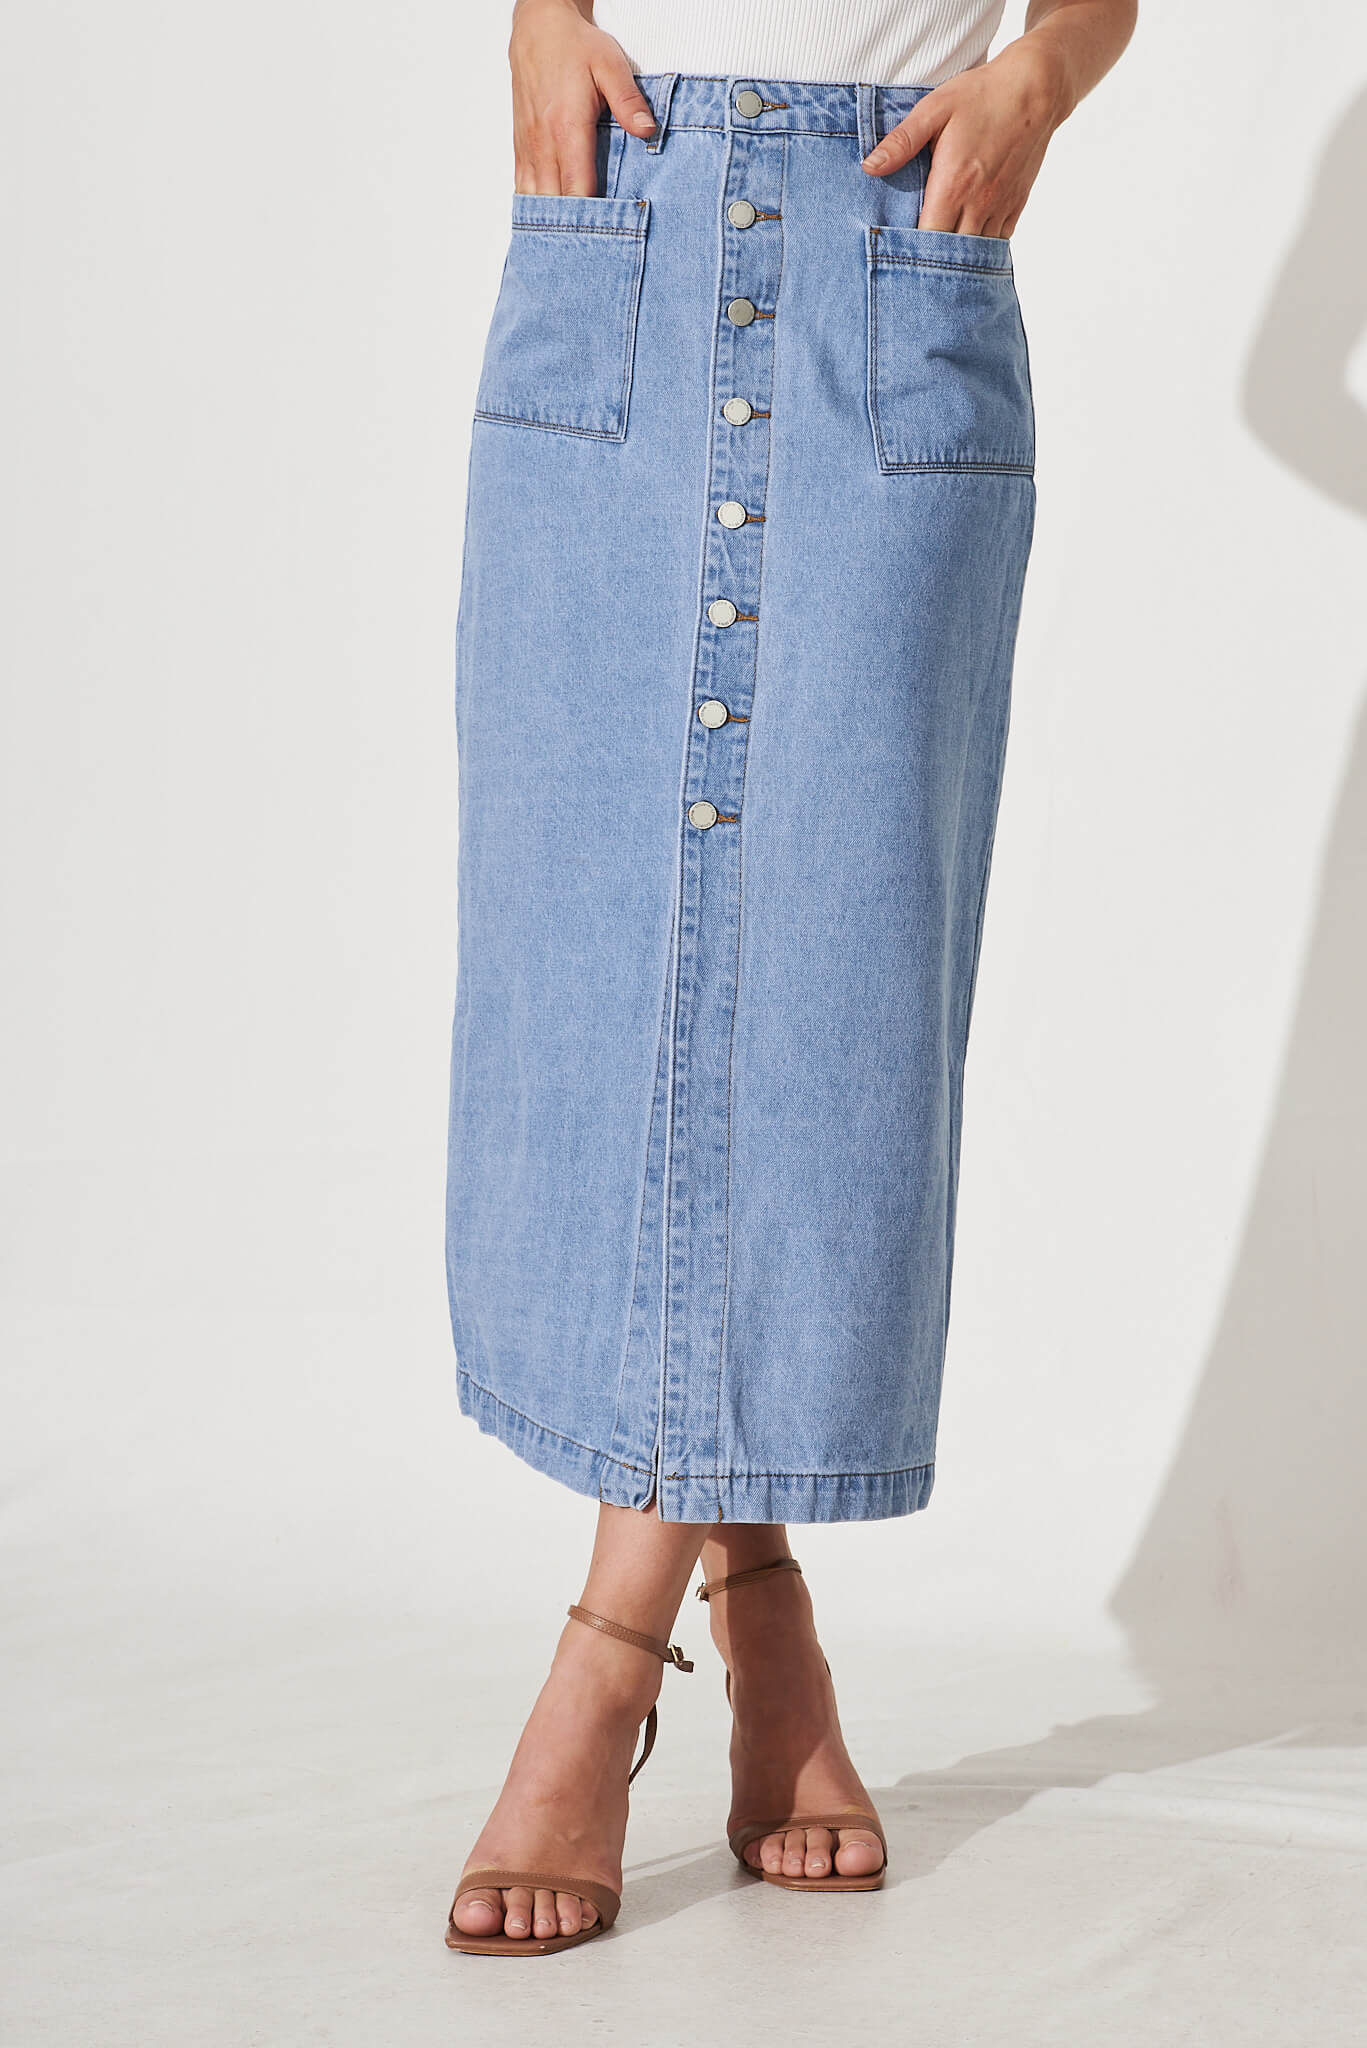 Starflower Maxi Denim Skirt In Light Blue - front